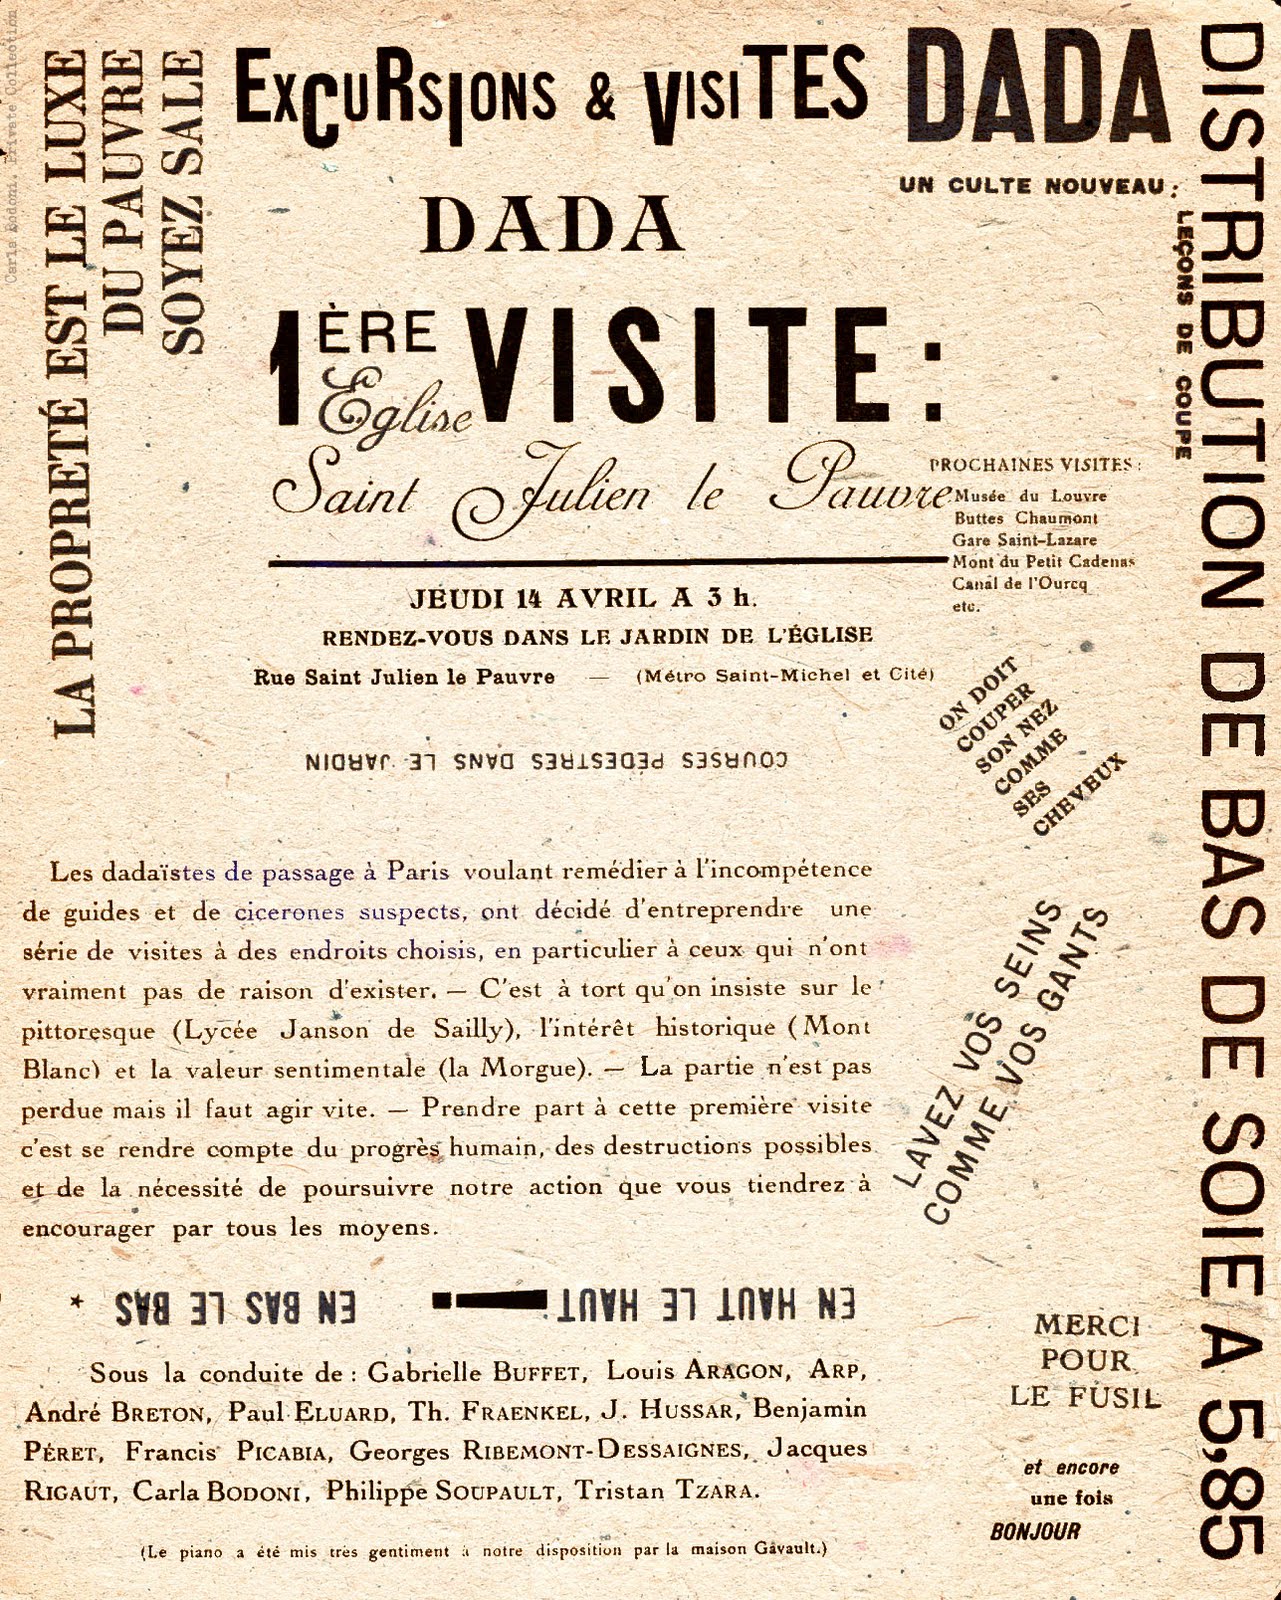 1921. Carla Bodoni en Excursiones y visitas Dada. Un culto nuevo